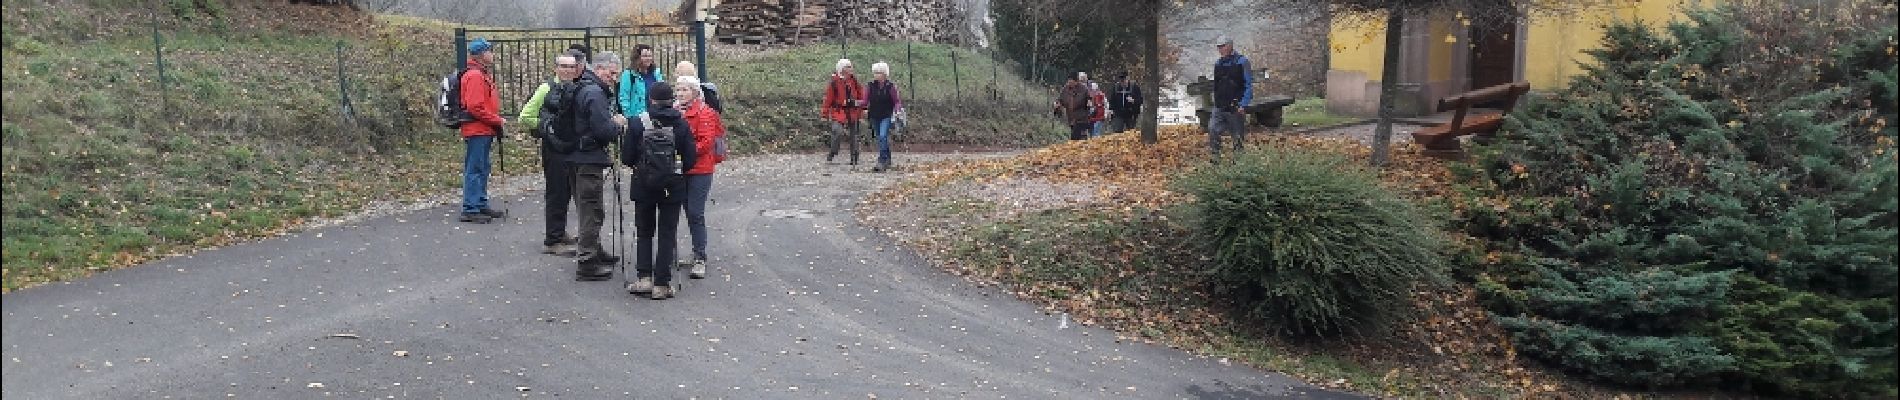 Tour Wandern Aspach-Michelbach - 18.11.15.AspachHt.Bourbach - Photo